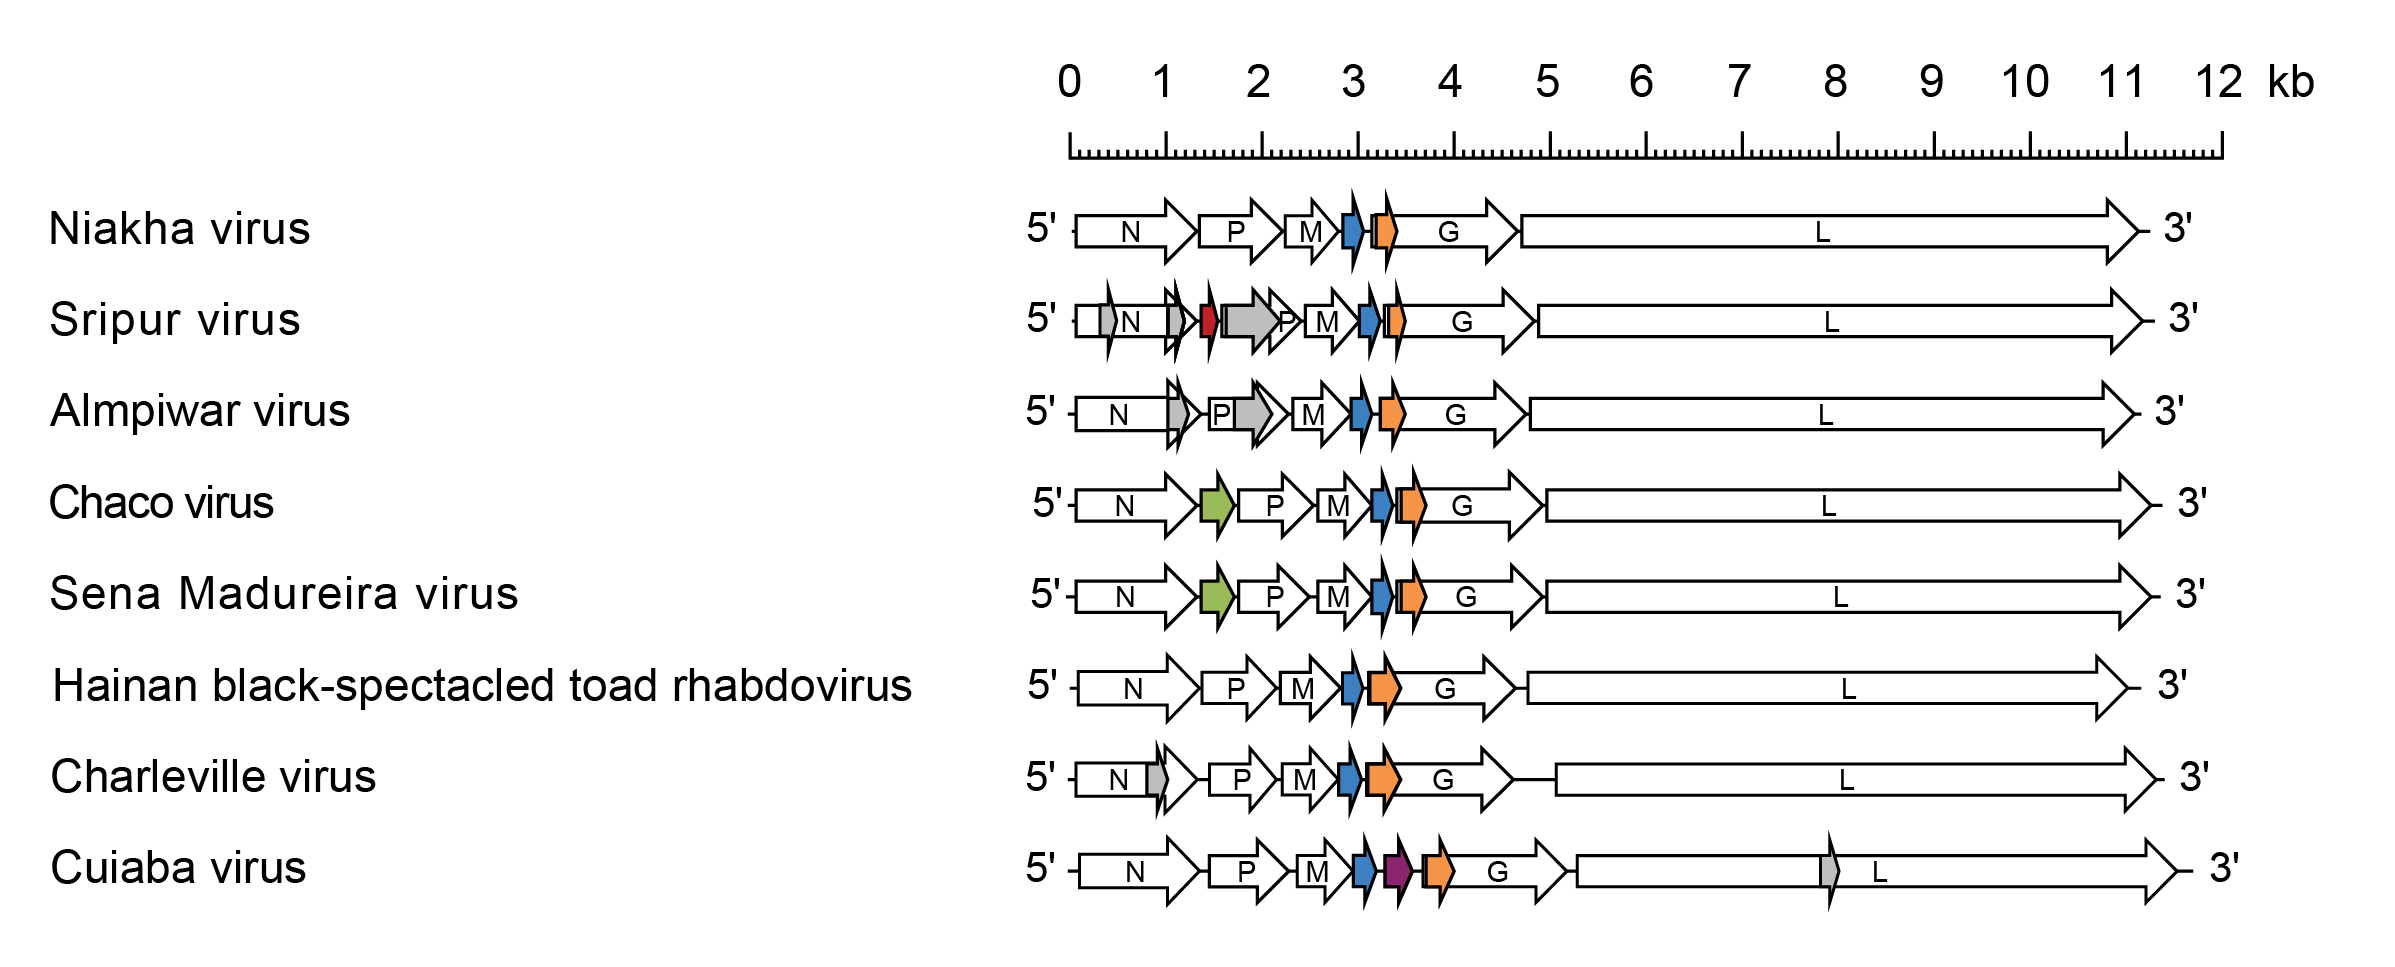 Sripuvirus genome